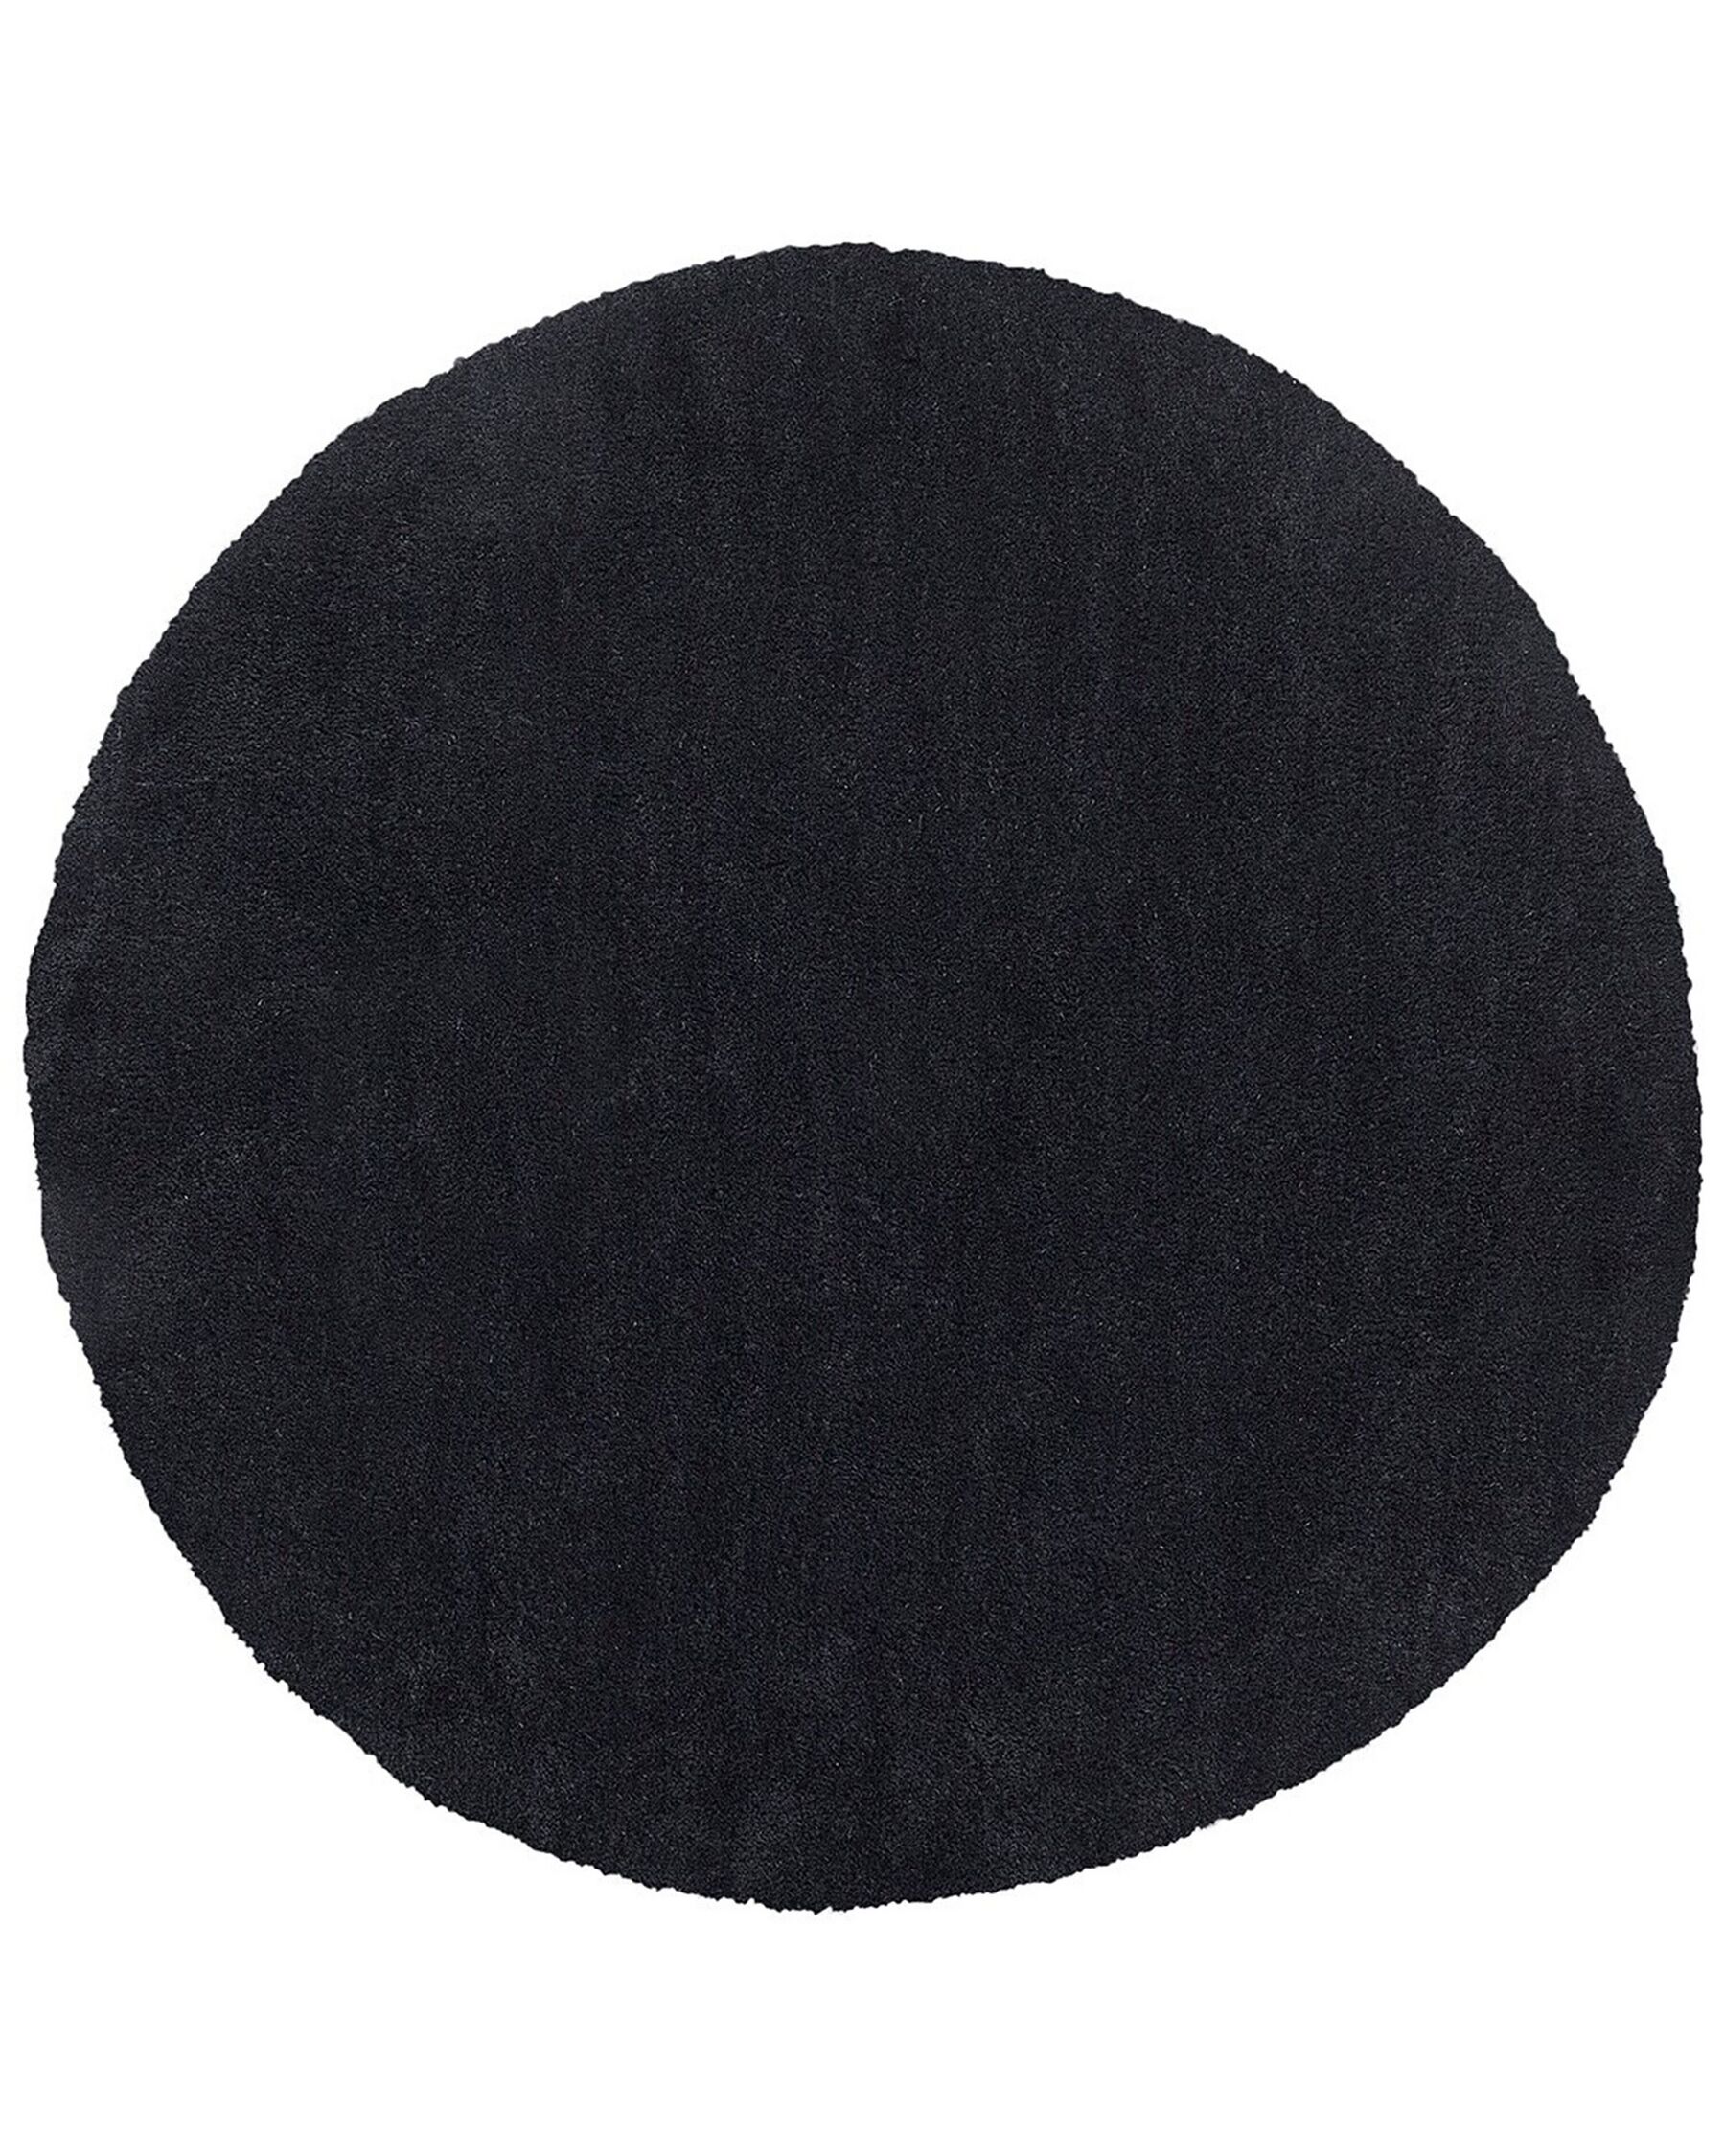 Tappeto shaggy nero tondo ⌀ 140 cm DEMRE_738105